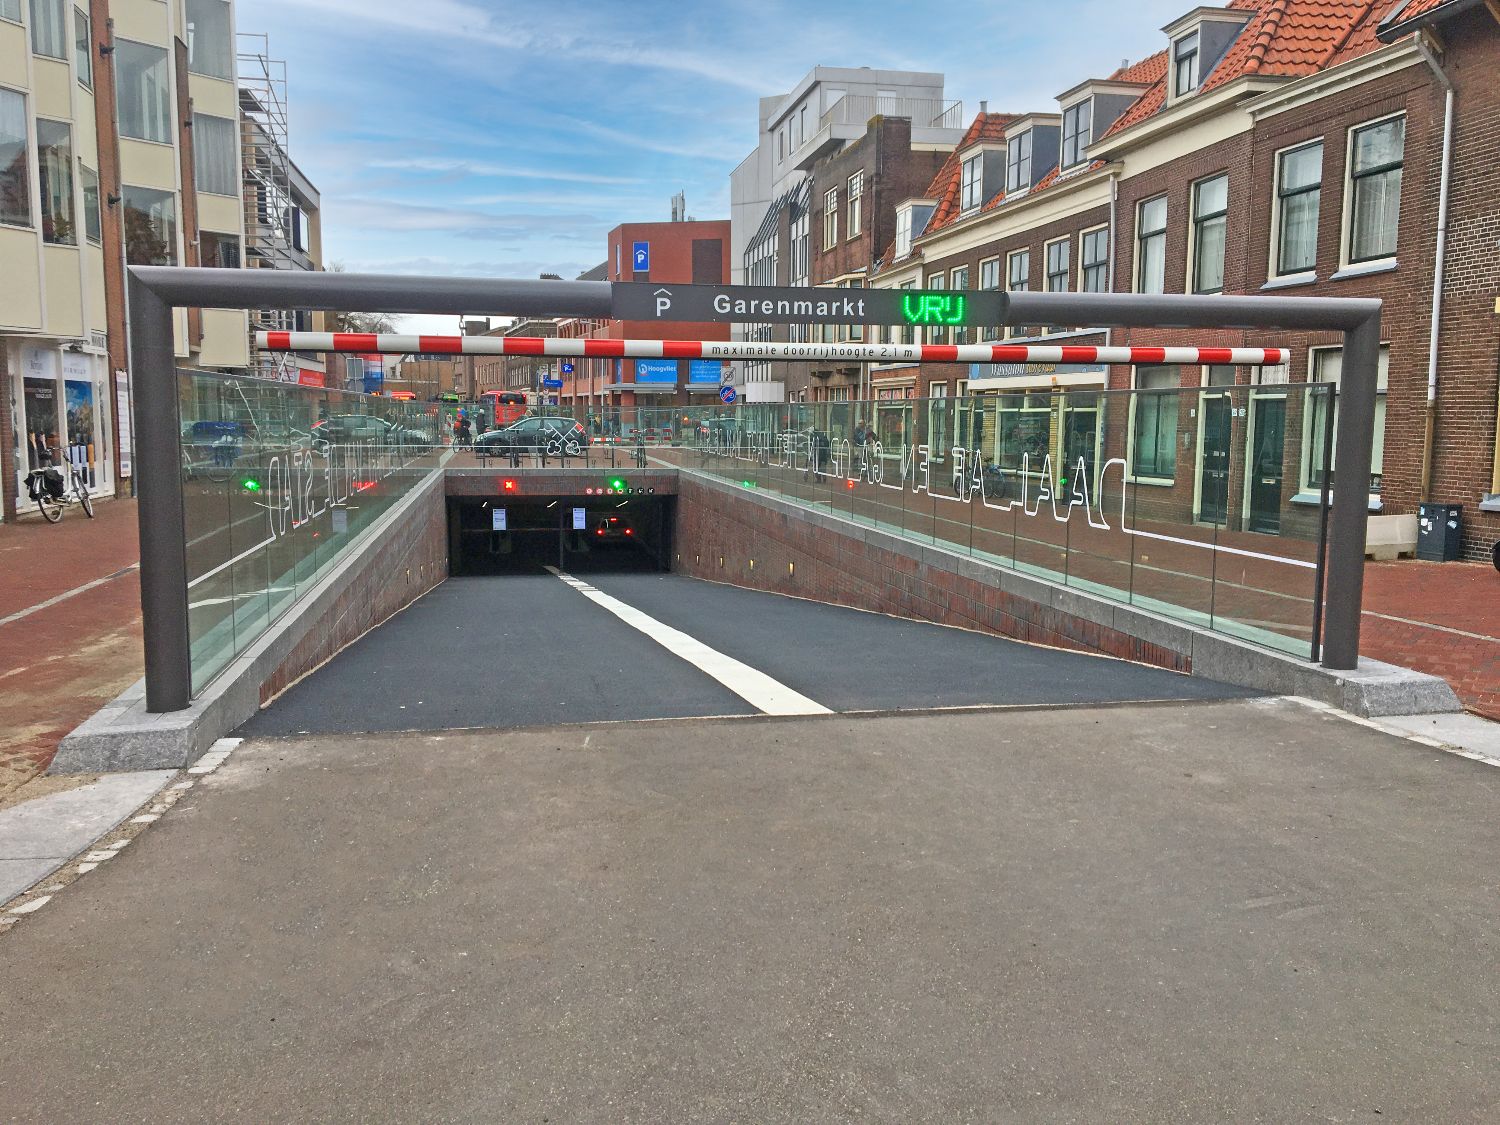 Entreeportaal parkeergarage Garenmarkt in  Gemeente Leiden.